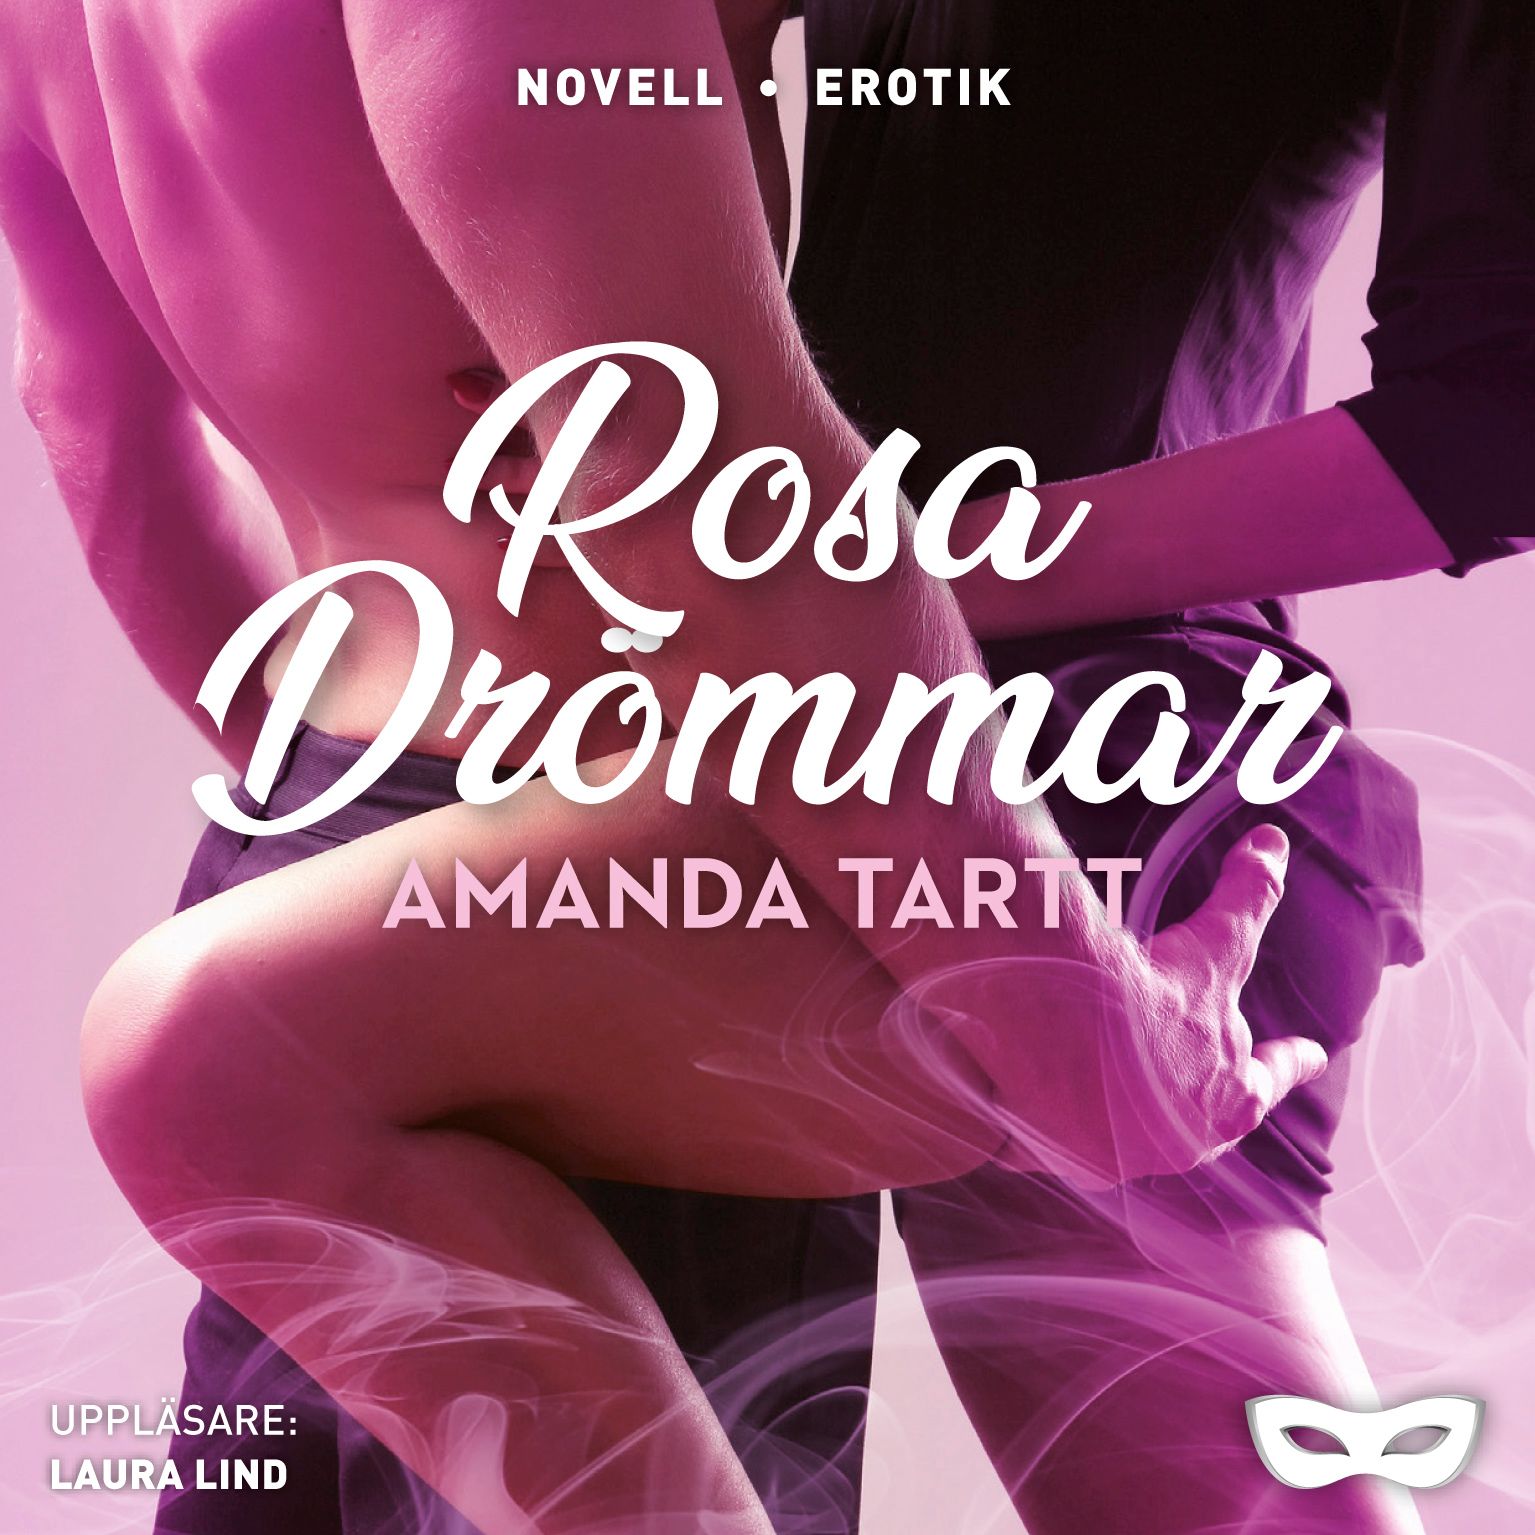 Rosa drömmar, ljudbok av Amanda Tartt